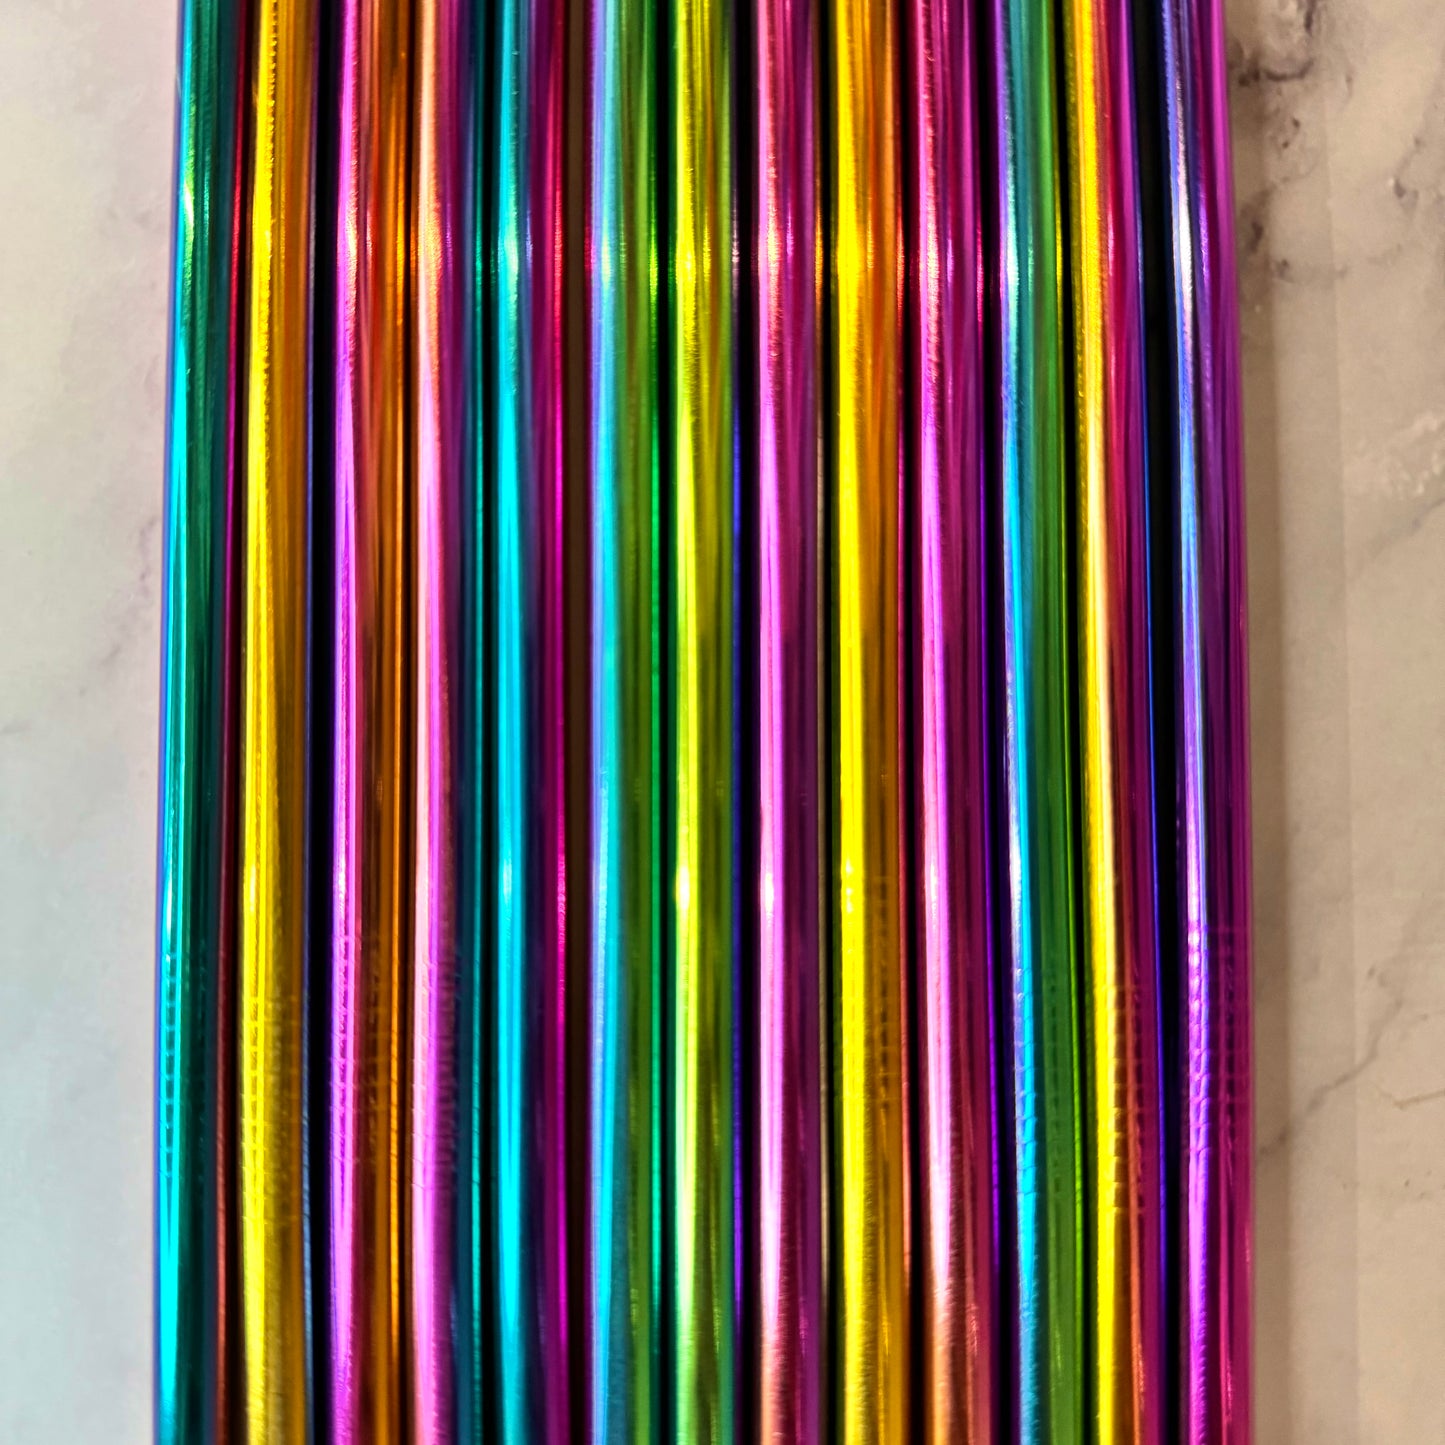 Chroma Straw Set - 40oz stainless steel tumbler straws- Set of 2